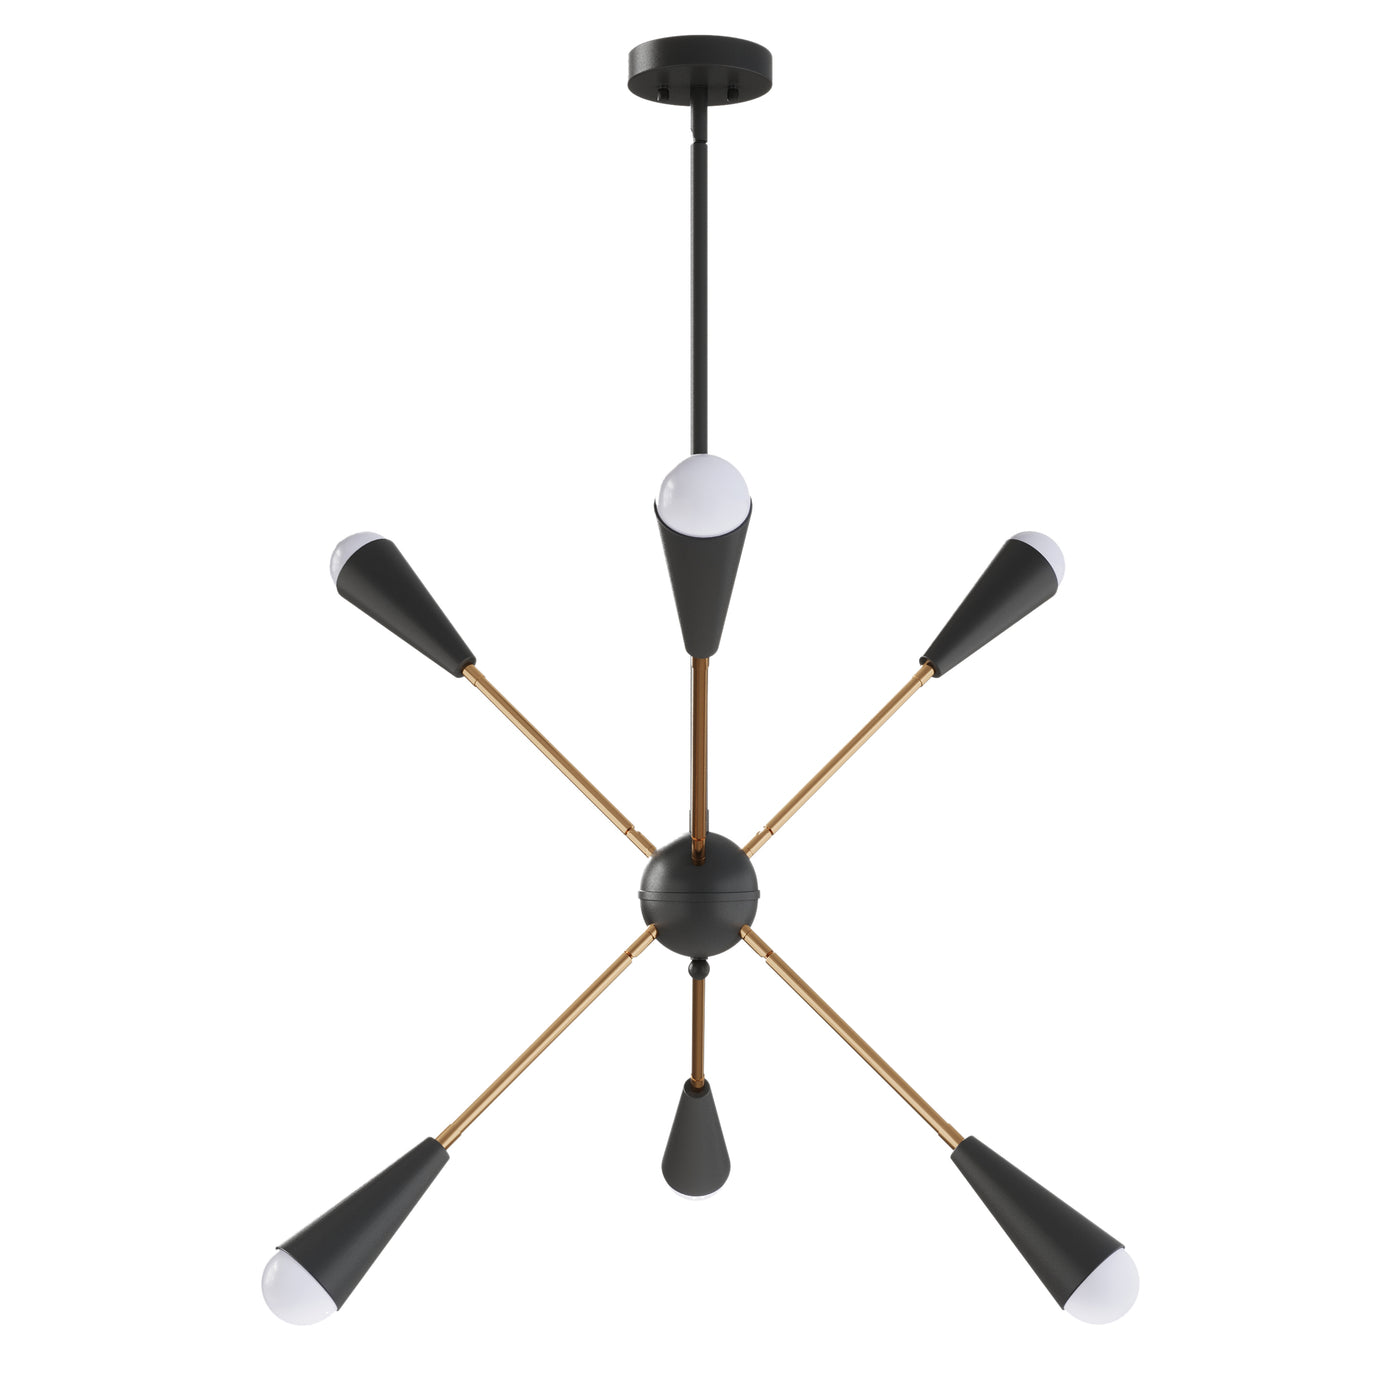 6-Lights & 10-Lights Modern Sputnik Linear Chandelier